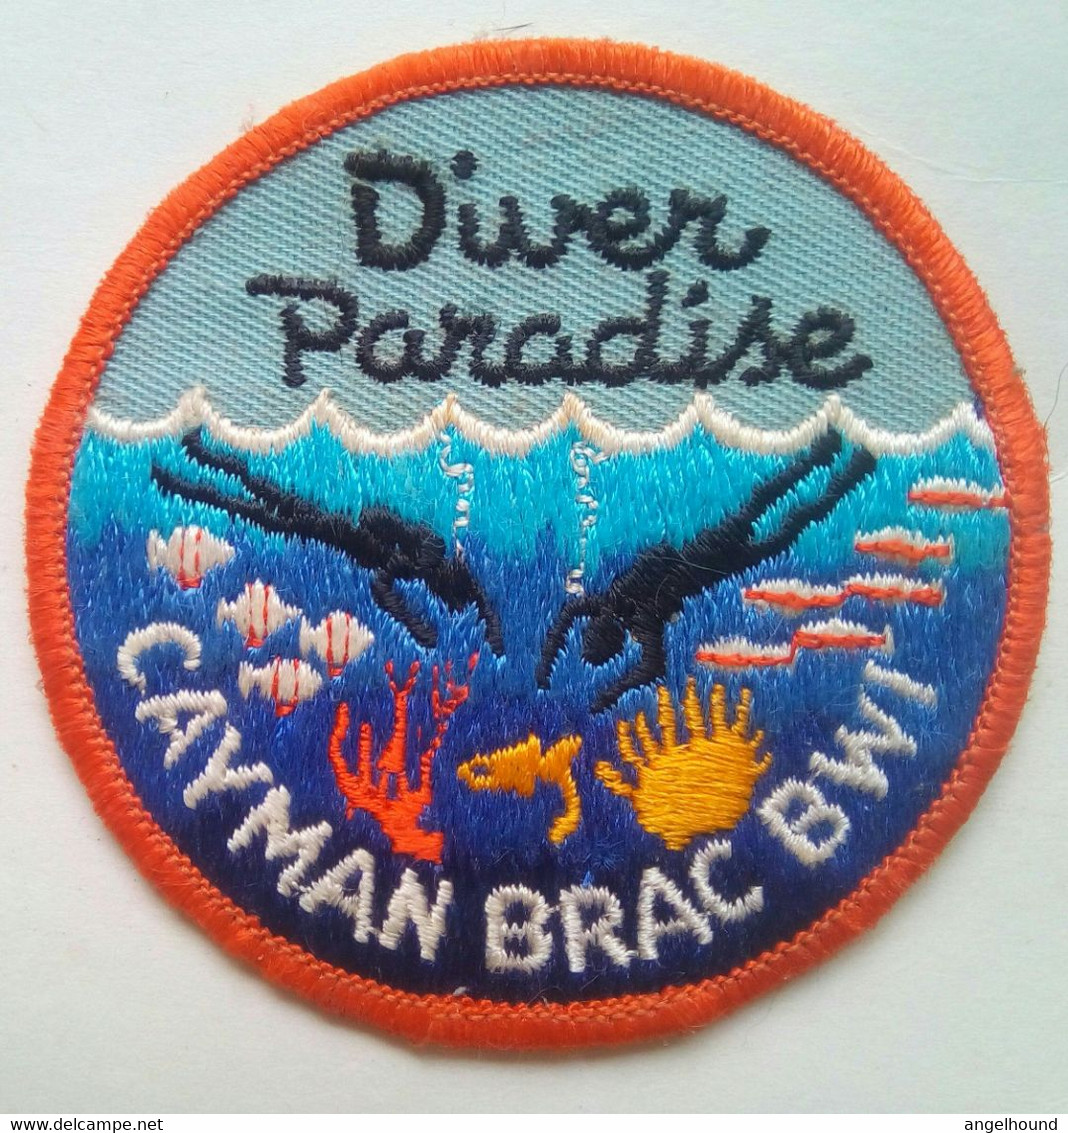 Cayman Brac Diver Paradise, Cayman Islands - Patches